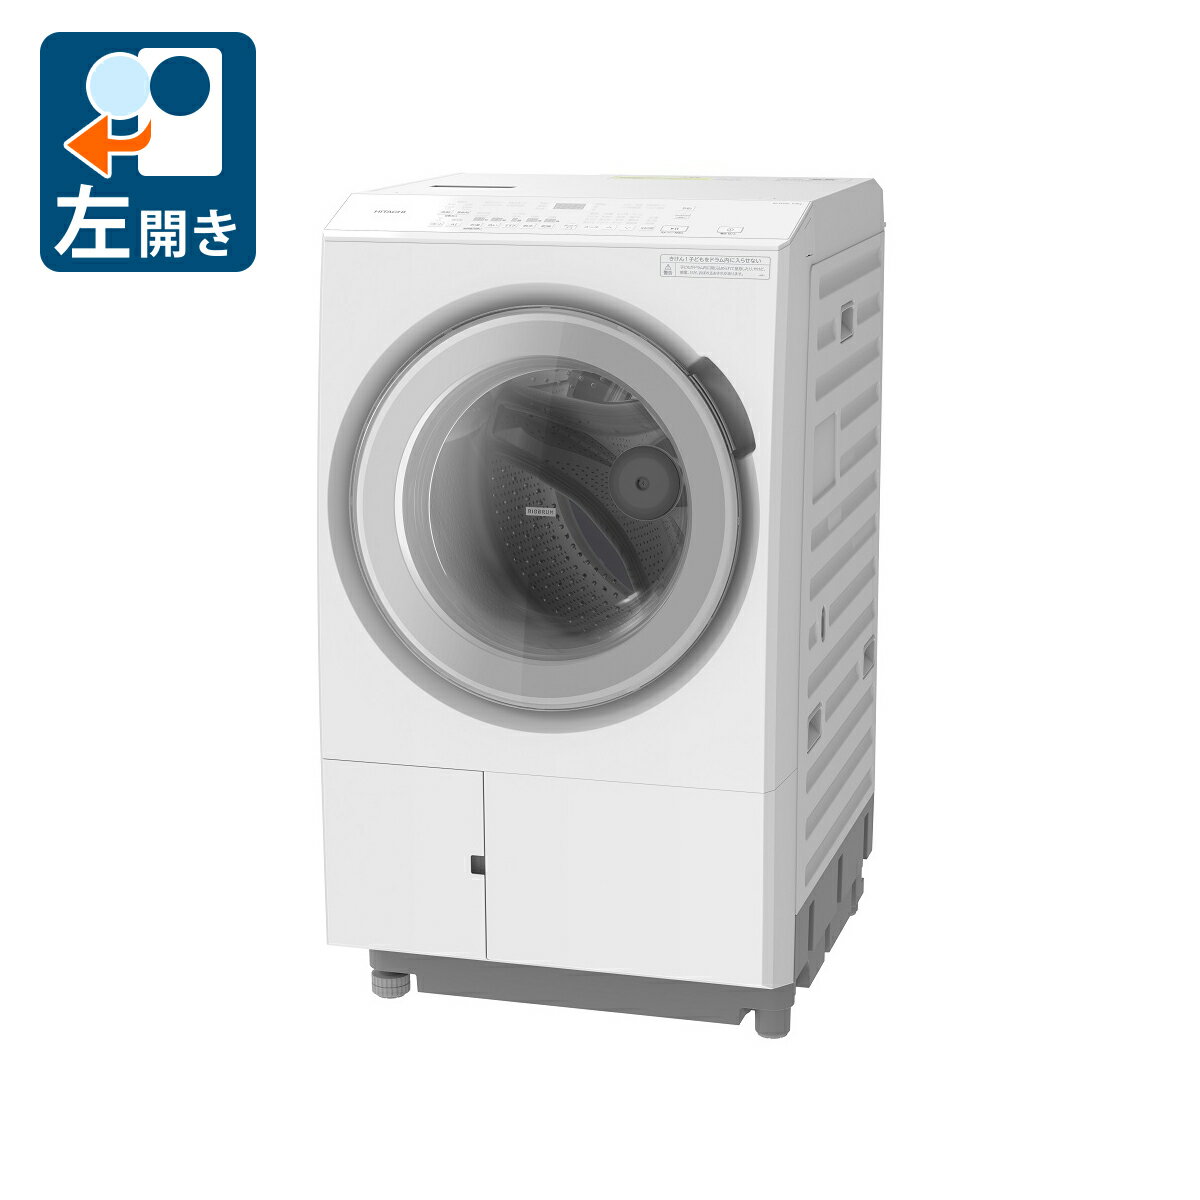 （標準設置料込）BD-SX120JL-W 日立 12.0kg ドラム式洗濯乾燥機ホワイト [BDSX120JLW]